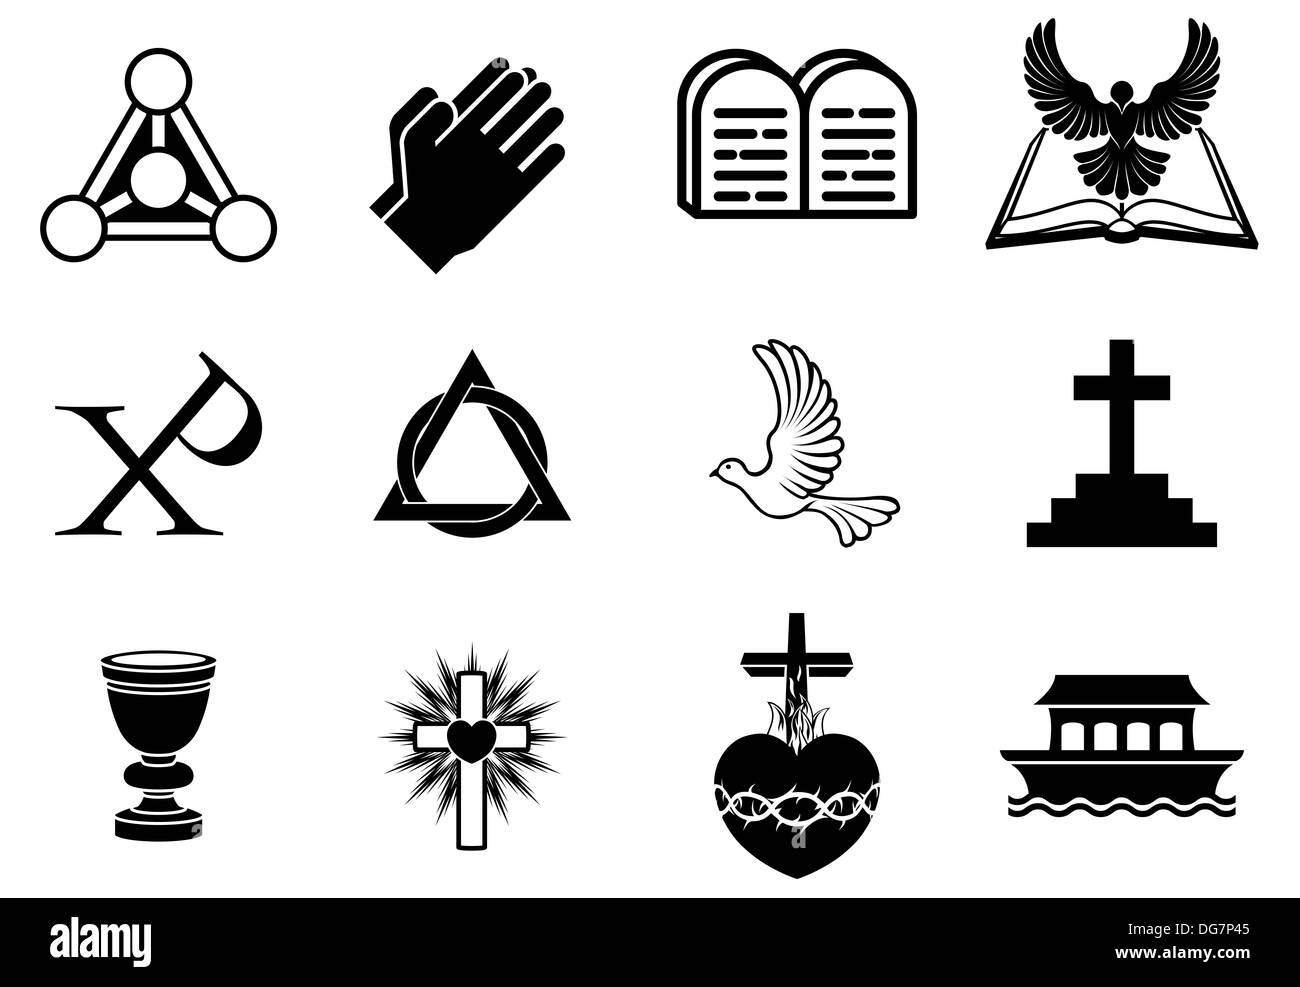 Christentum-Icons und Symbole, einschließlich Taube, Chi-Ro, beten Händen, Bibel, Trinity Christogramm, Kreuz, Kommunion Kelch, Arche Stockfoto